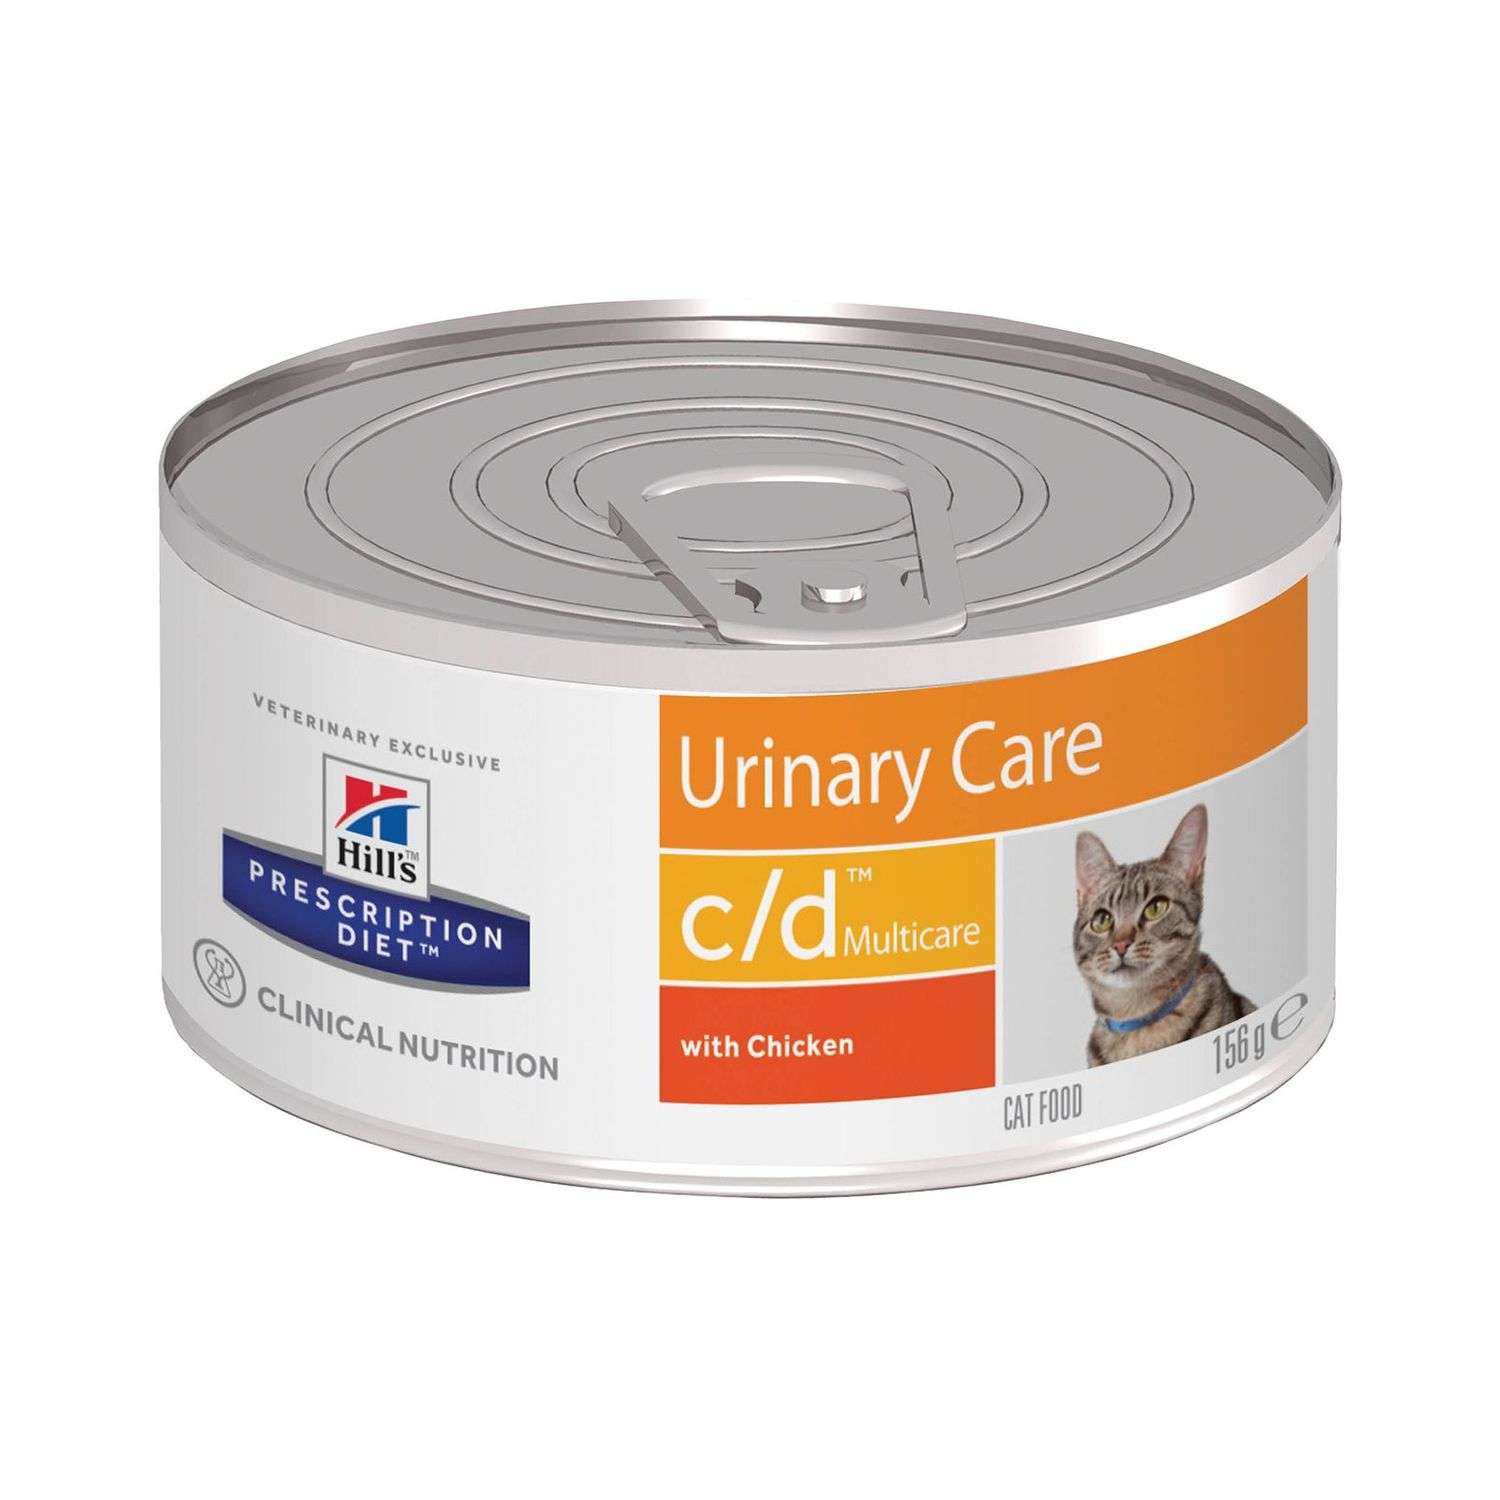 Корм для кошек HILLS 156г Prescription Diet c/d Multicare Urinary Care для МКБ с курицей консервированный - фото 1